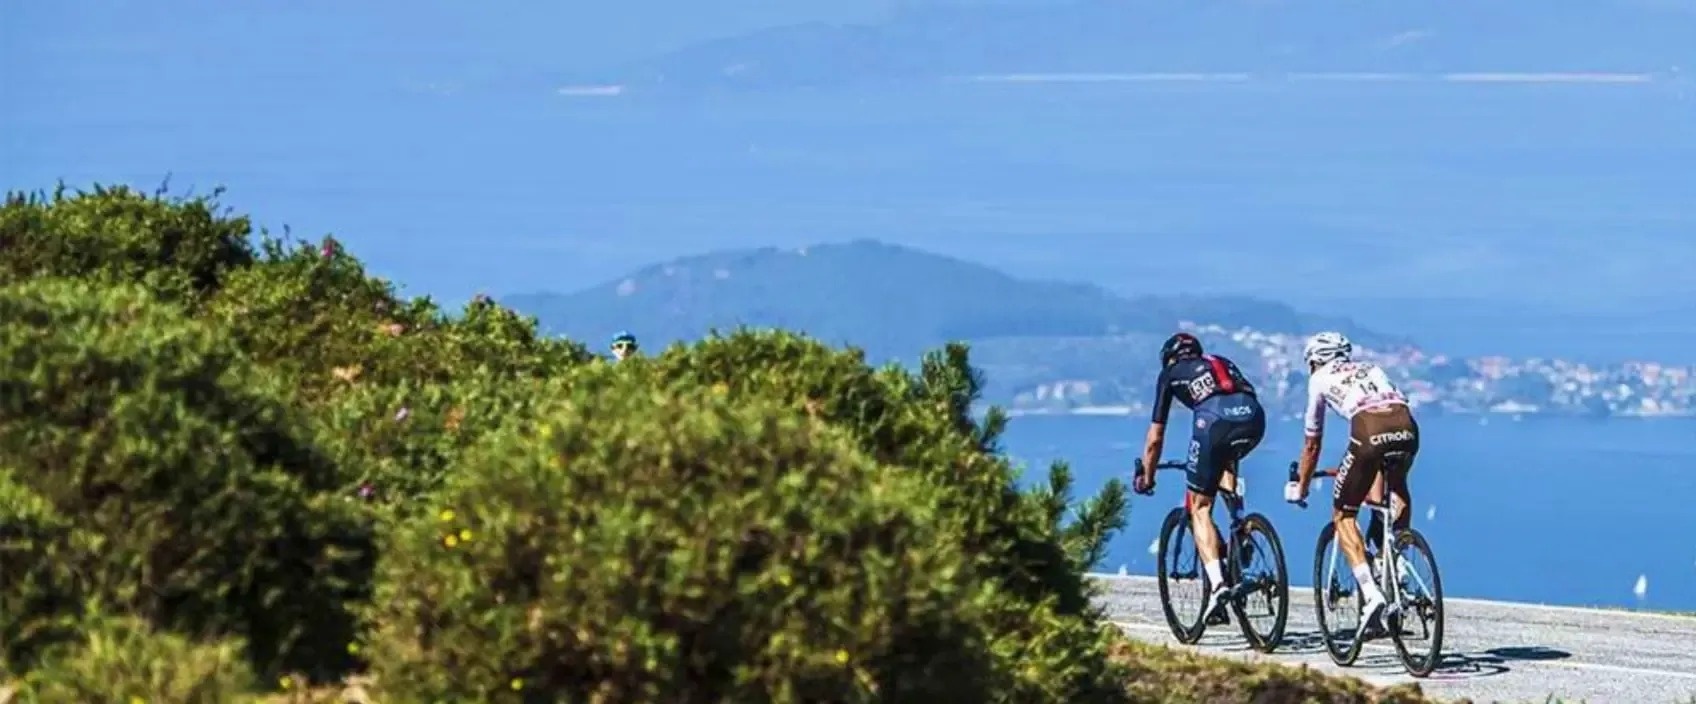 dos personas andan en bicicleta por una carretera cerca del océano .